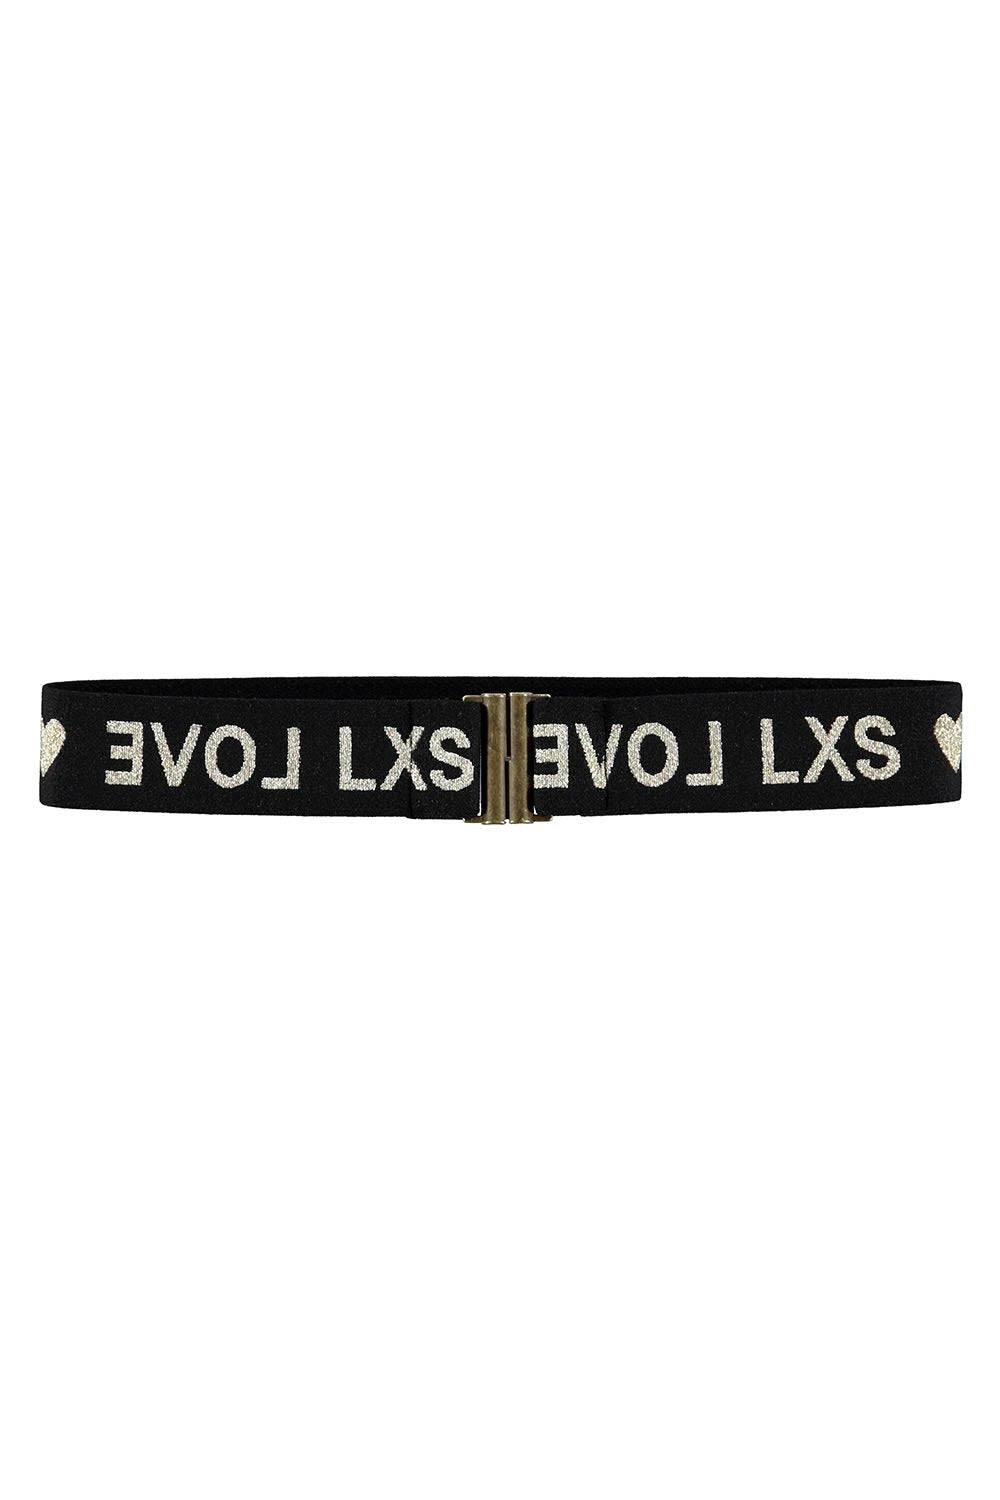 Meisjes Elastic belt LXS LOVE van LOOXS 10sixteen in de kleur black in maat 152/176.